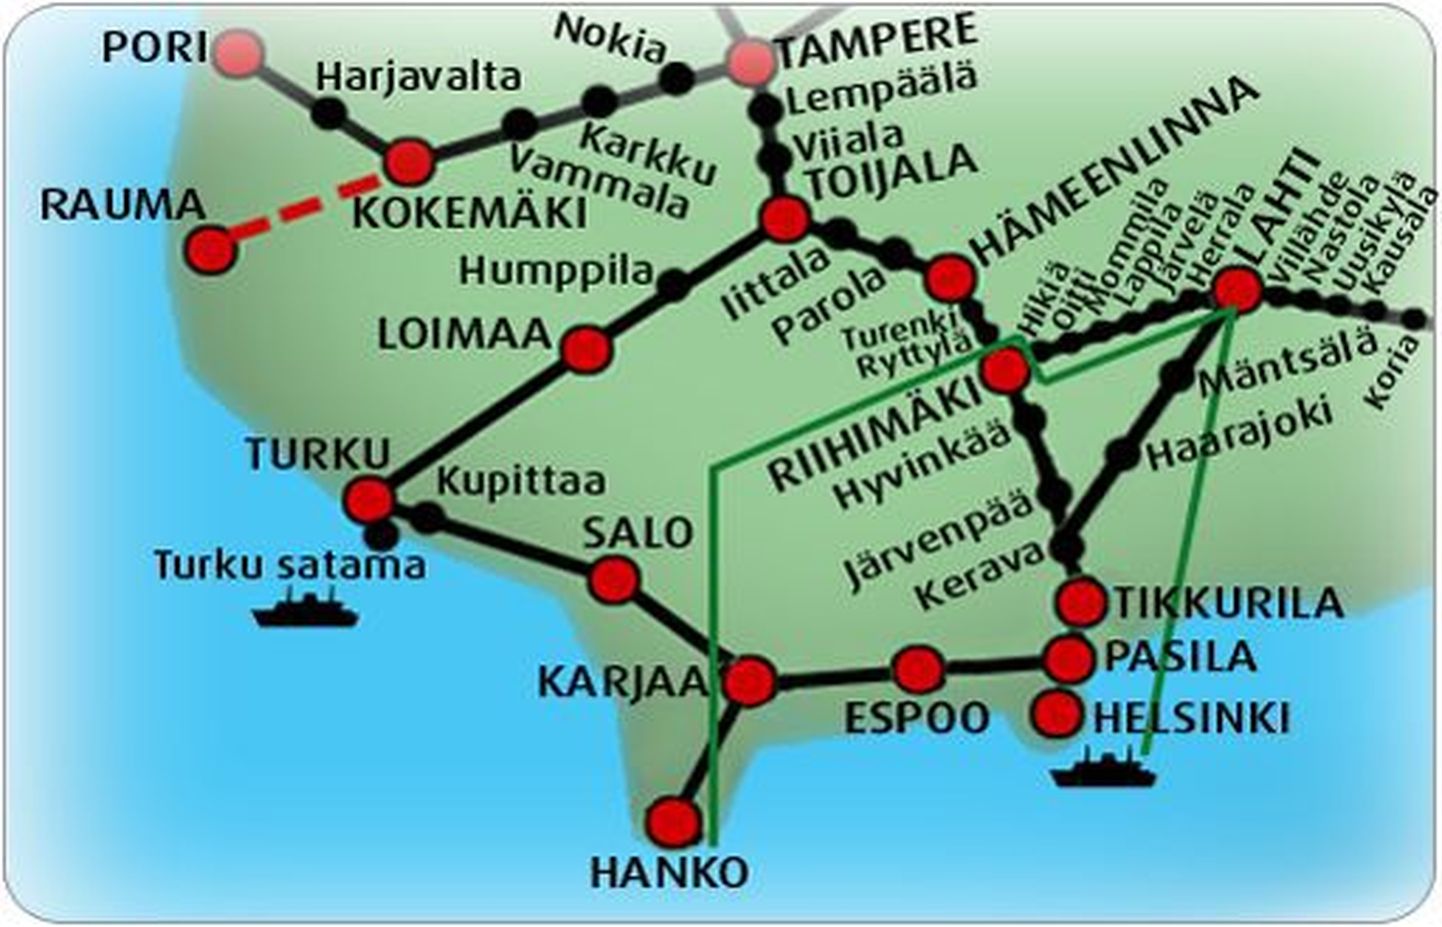 Helsingist Kouvolasse suundunud rong pidi ristmikul pöörama Lahti poole, kuid võttis suuna Riihimäkile.